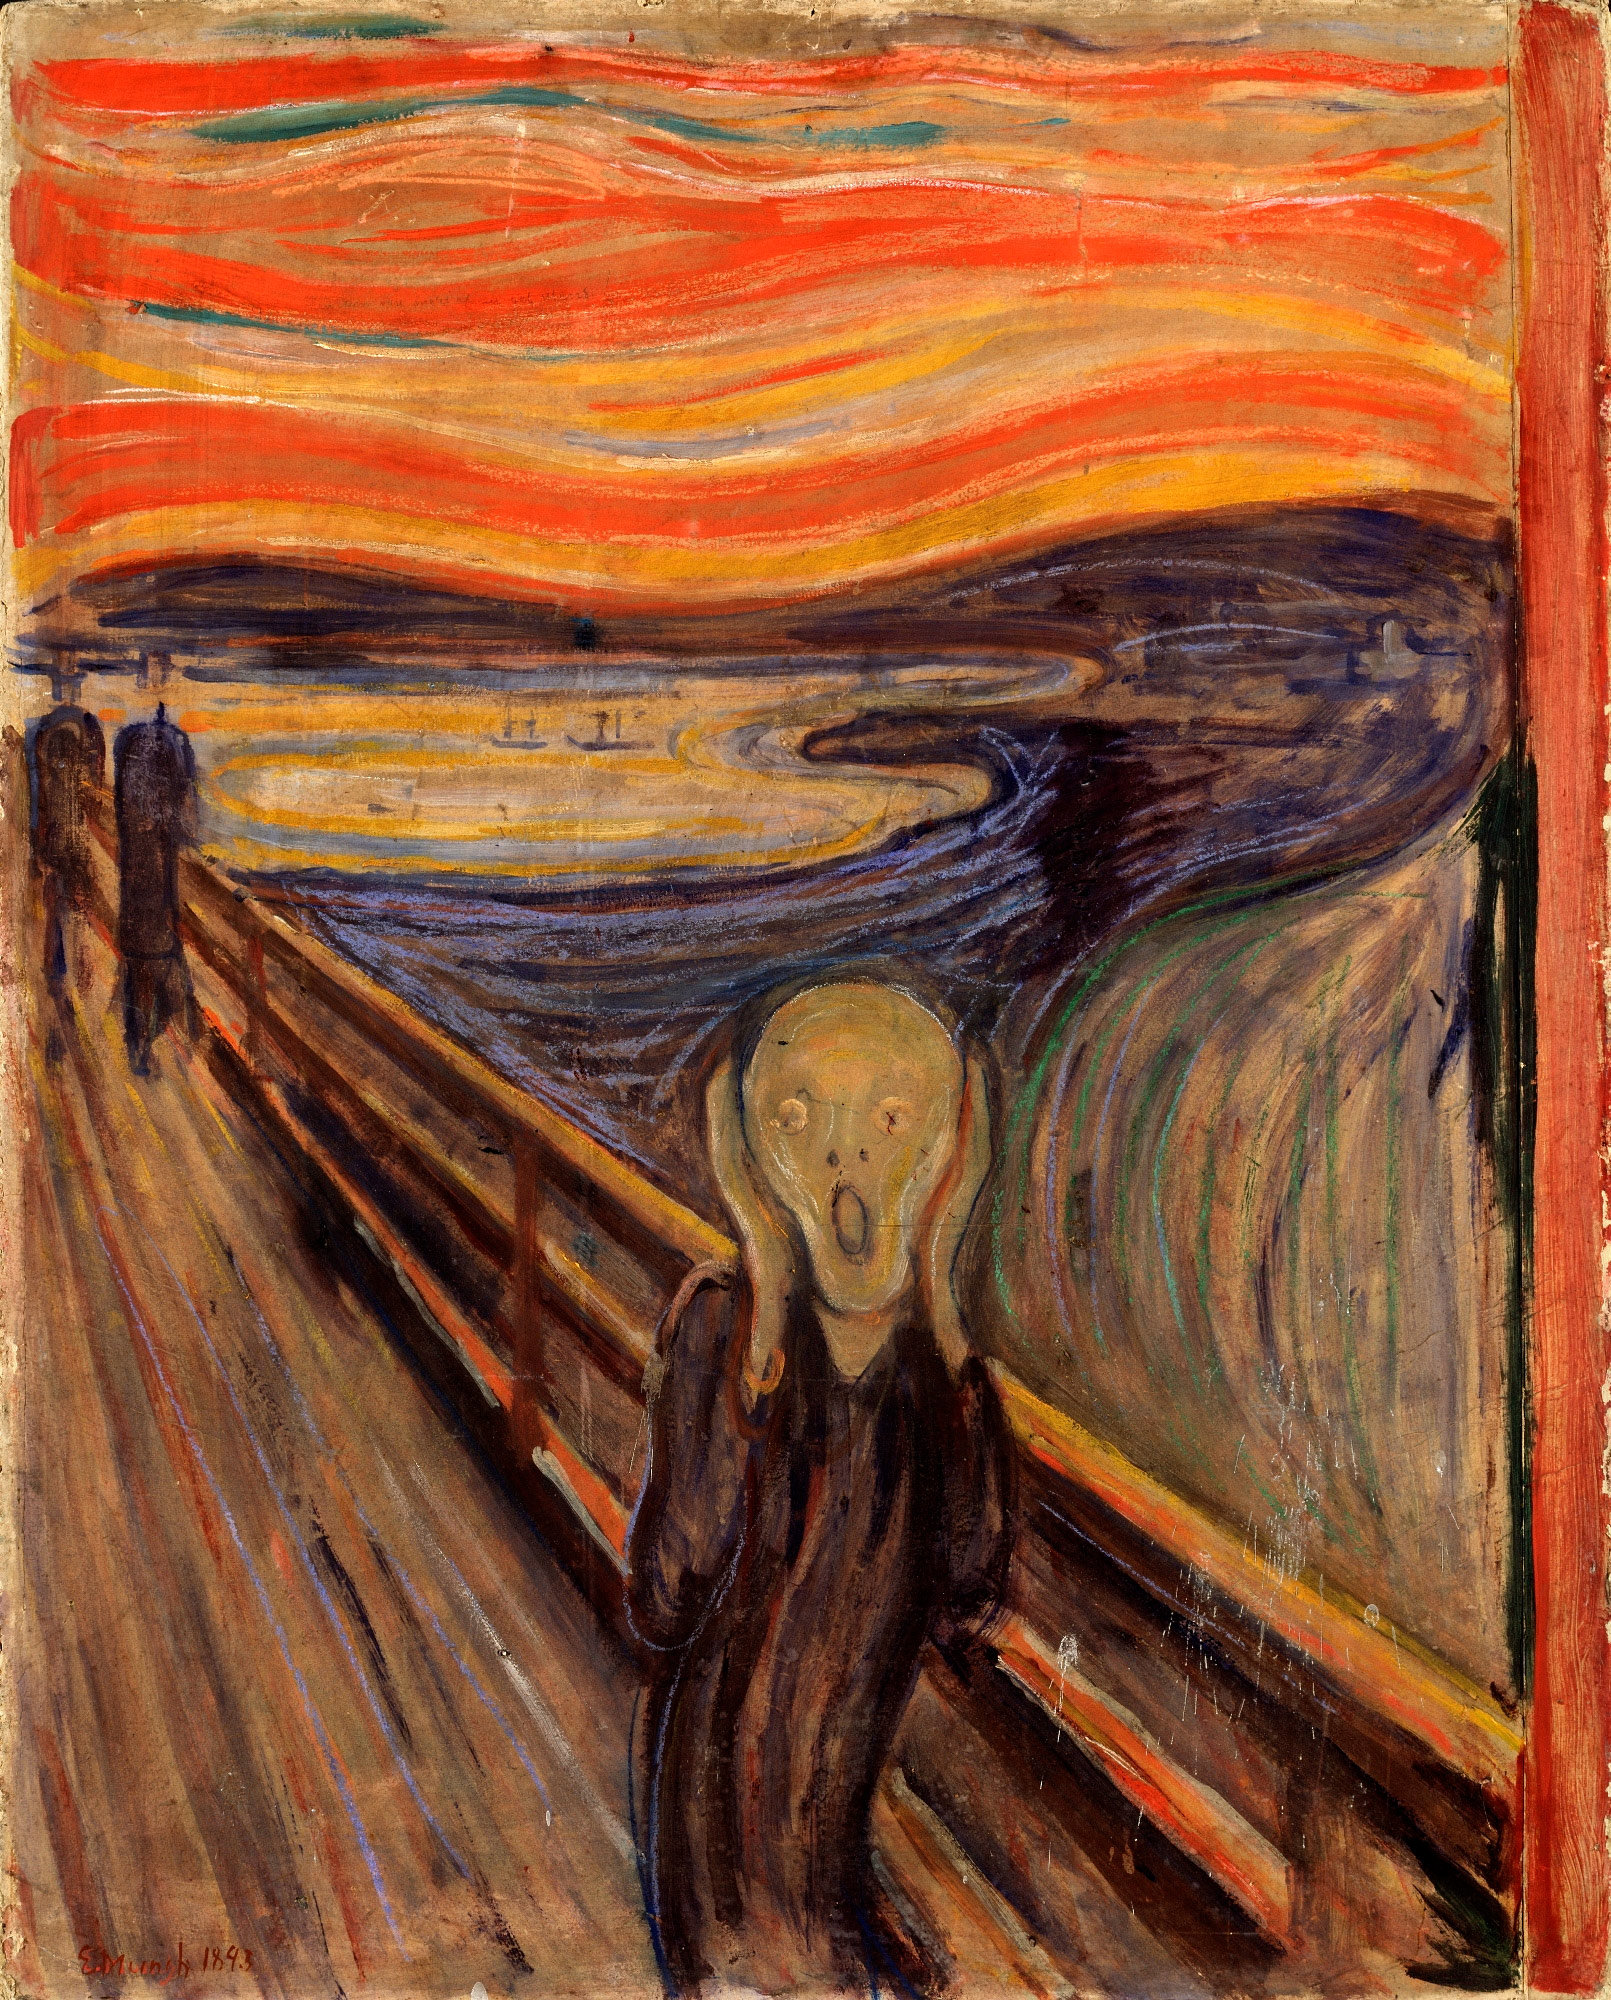 El grito, Edvard Munch, 1893